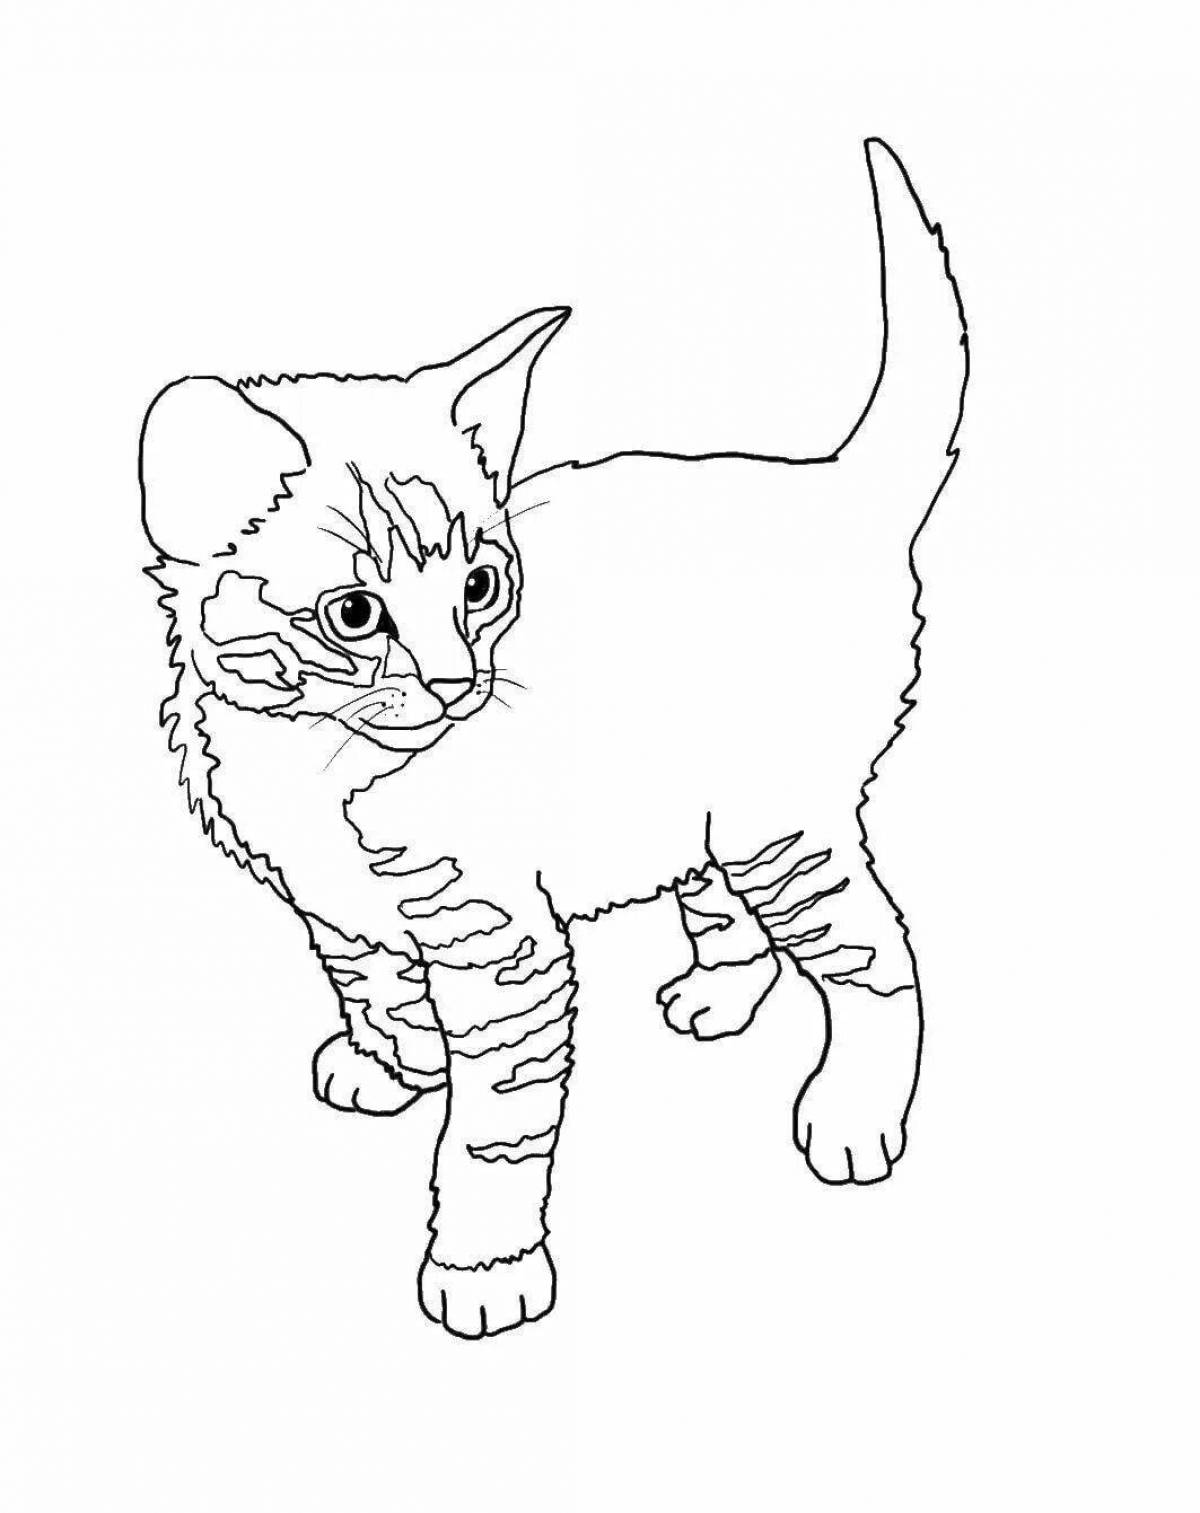 Страница раскраски бдительного кота